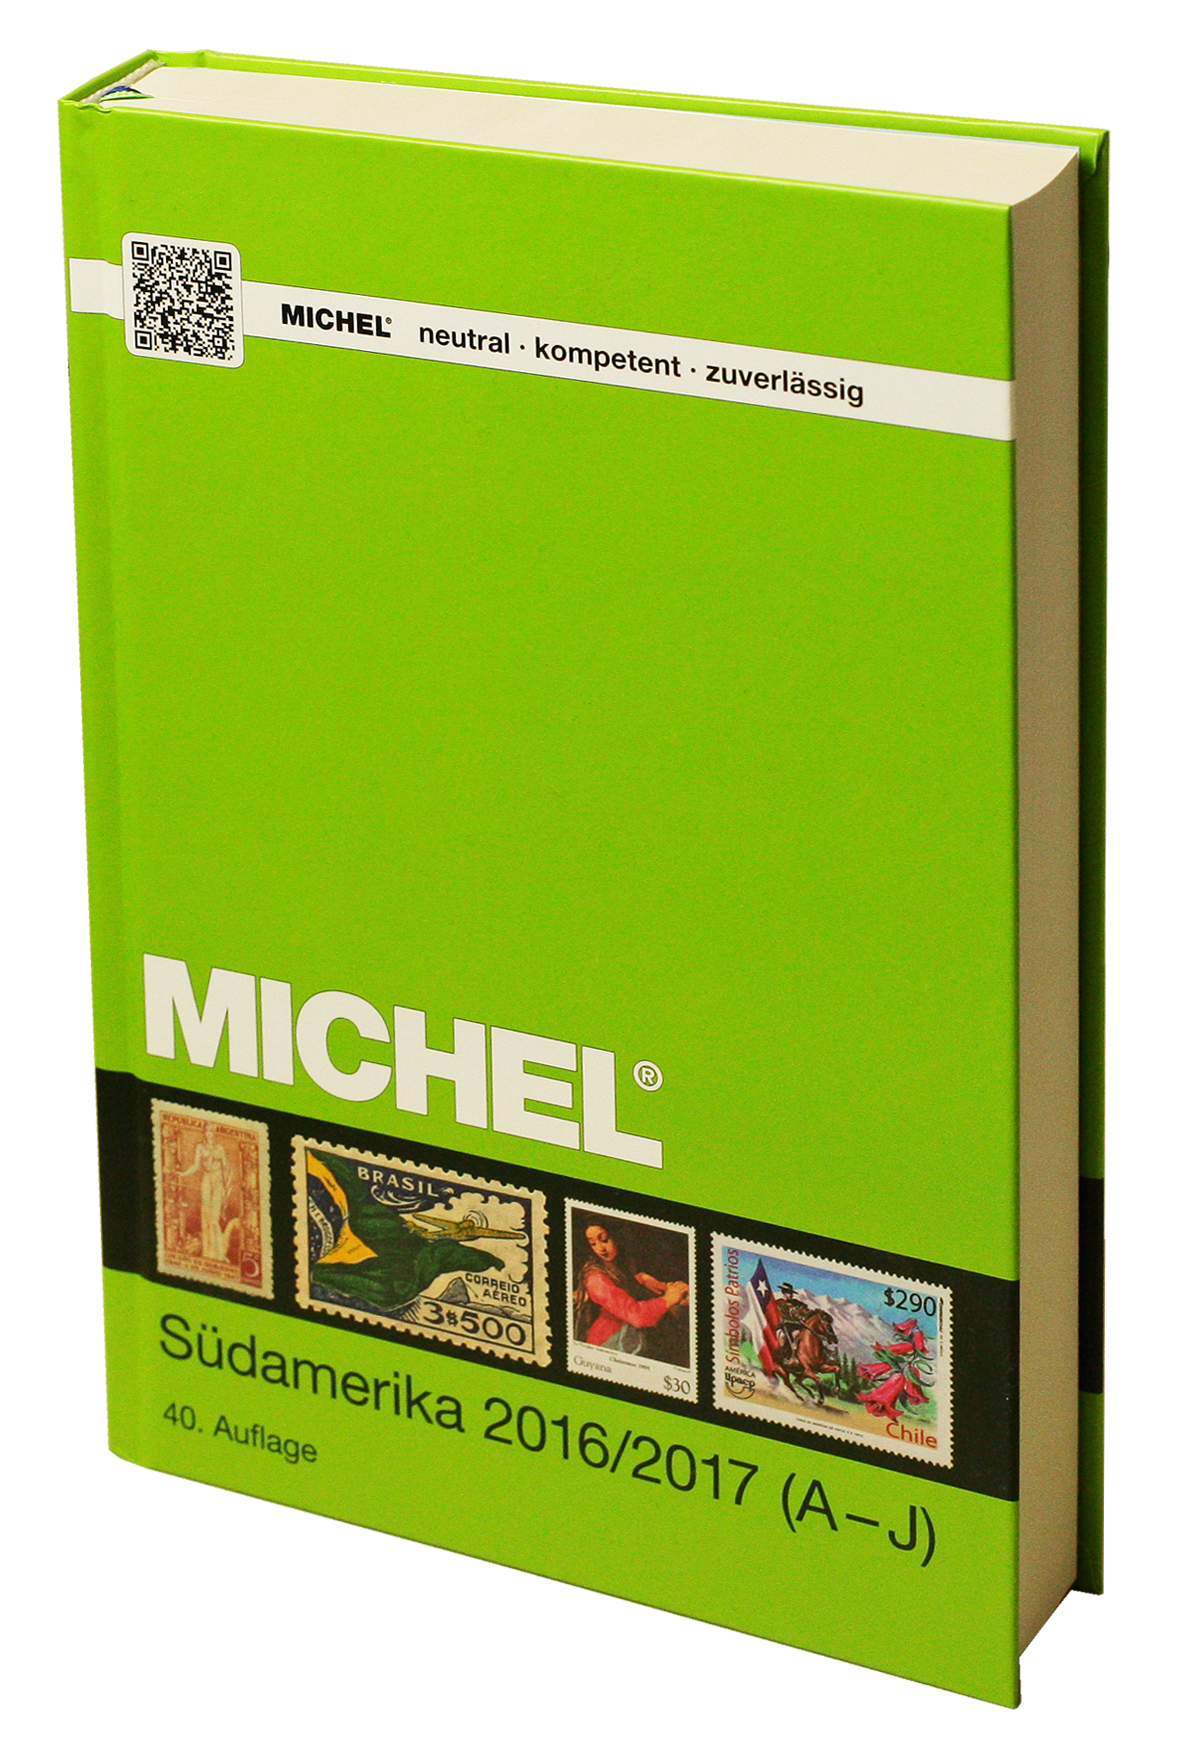 Jižní Amerika / Südamerika 2016/2017 ( 1.díl )  MICHEL katalog známek